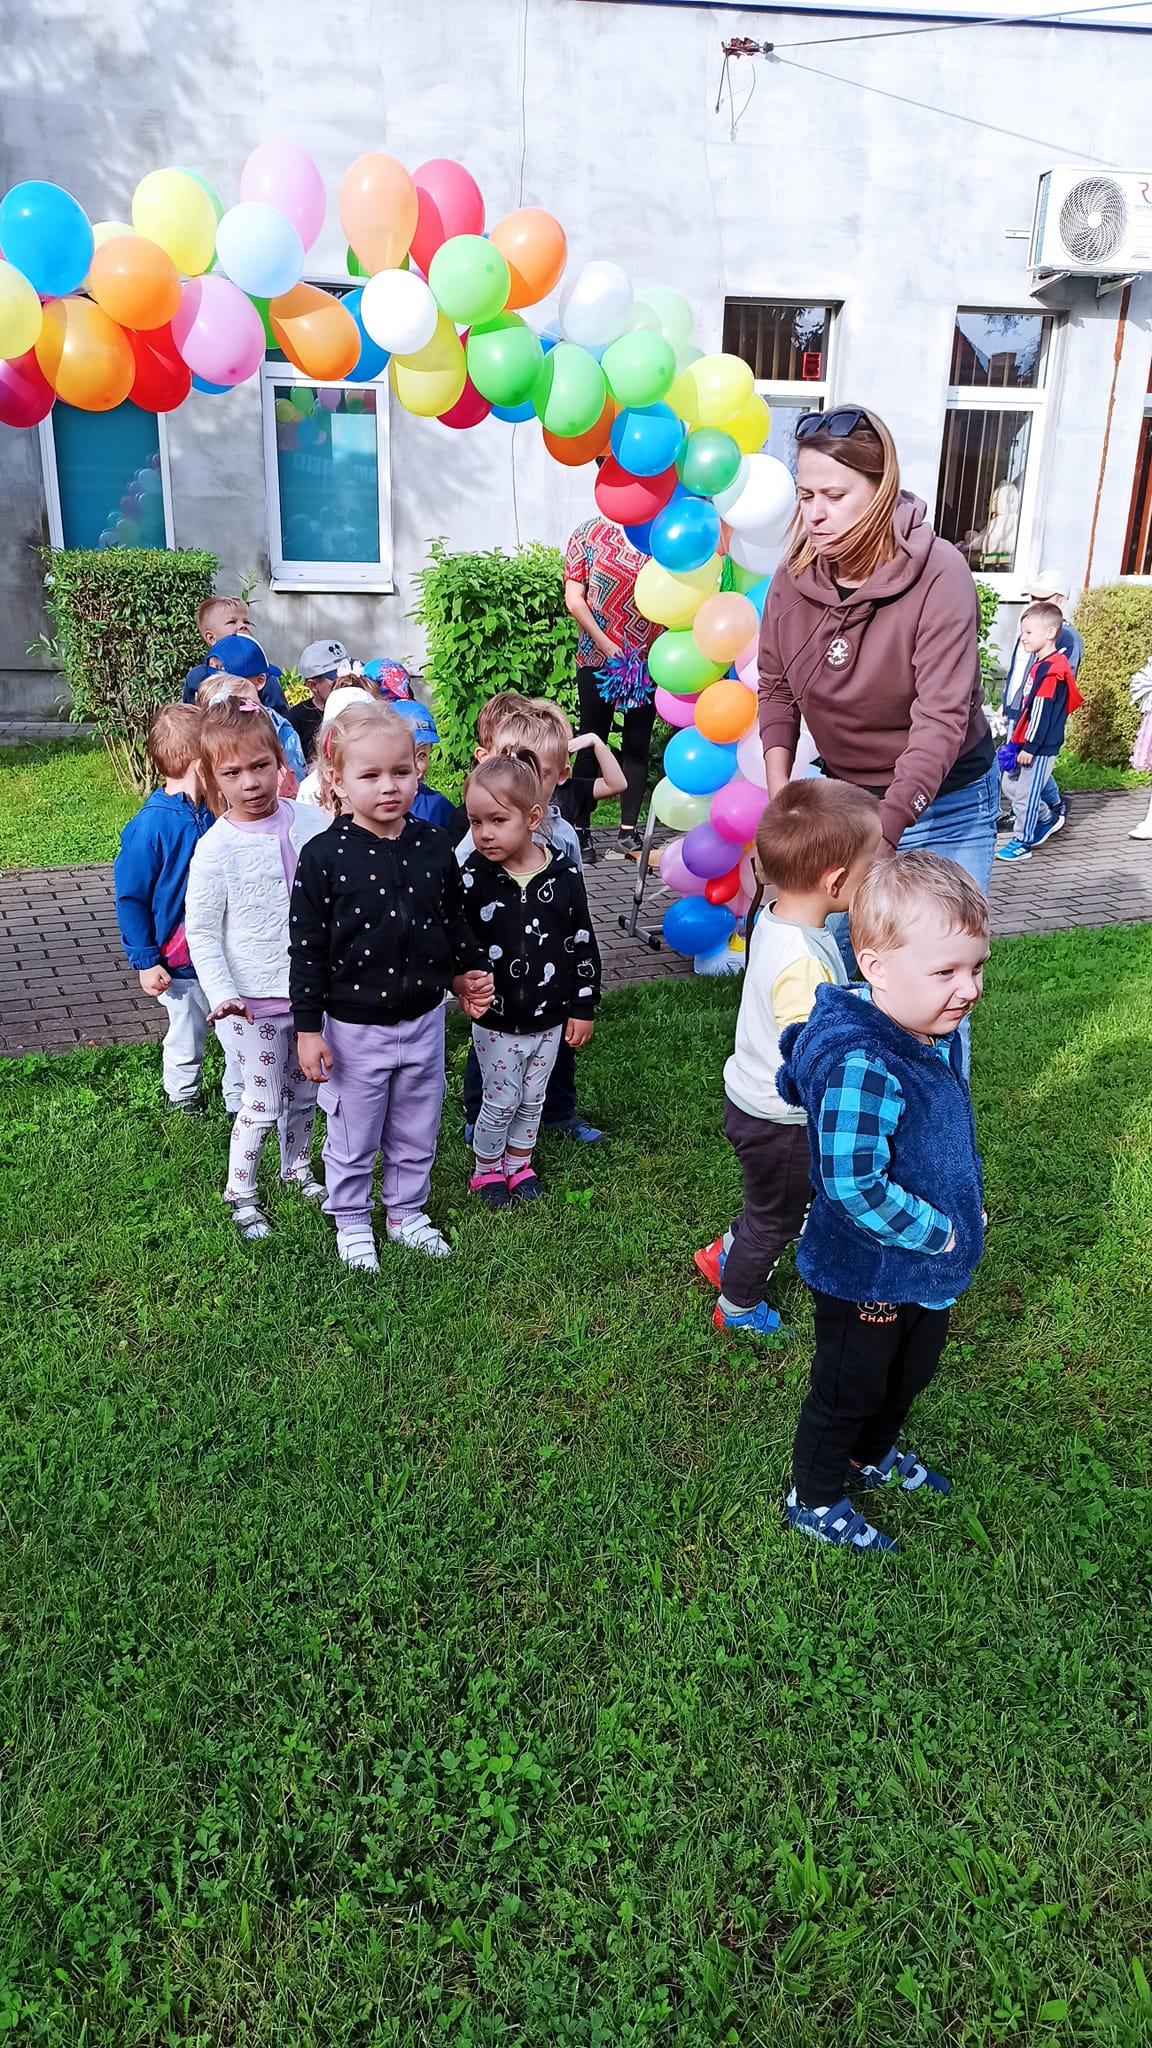 Obraz zawierający trawa, ubrania, balon, małe dziecko

Opis wygenerowany automatycznie